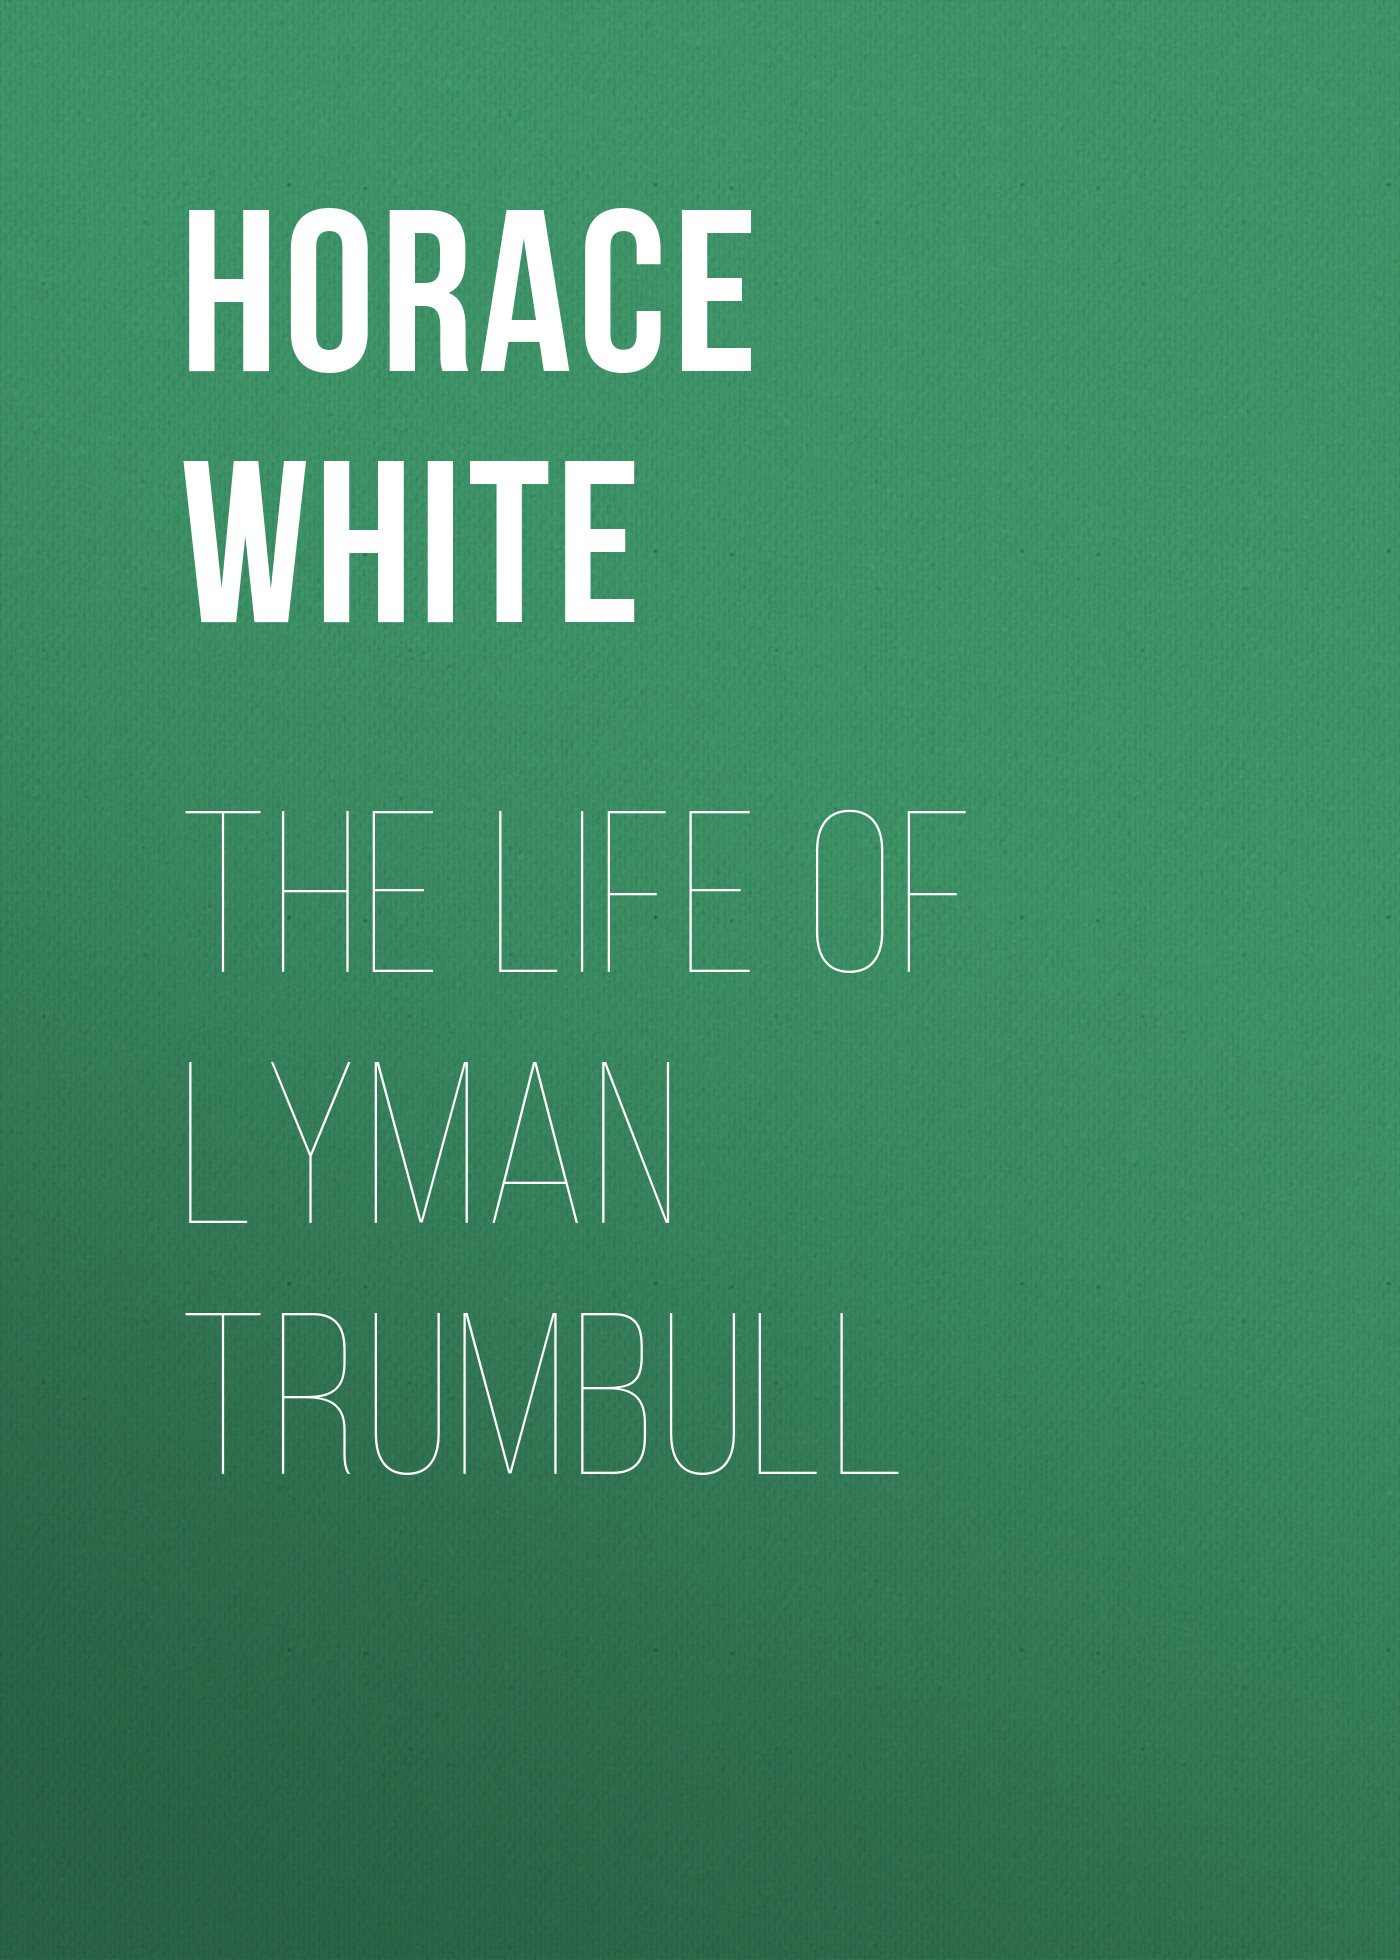 Книга The Life of Lyman Trumbull из серии , созданная Horace White, может относится к жанру Зарубежная классика, История, Зарубежная образовательная литература, Зарубежная старинная литература. Стоимость электронной книги The Life of Lyman Trumbull с идентификатором 34337786 составляет 0 руб.